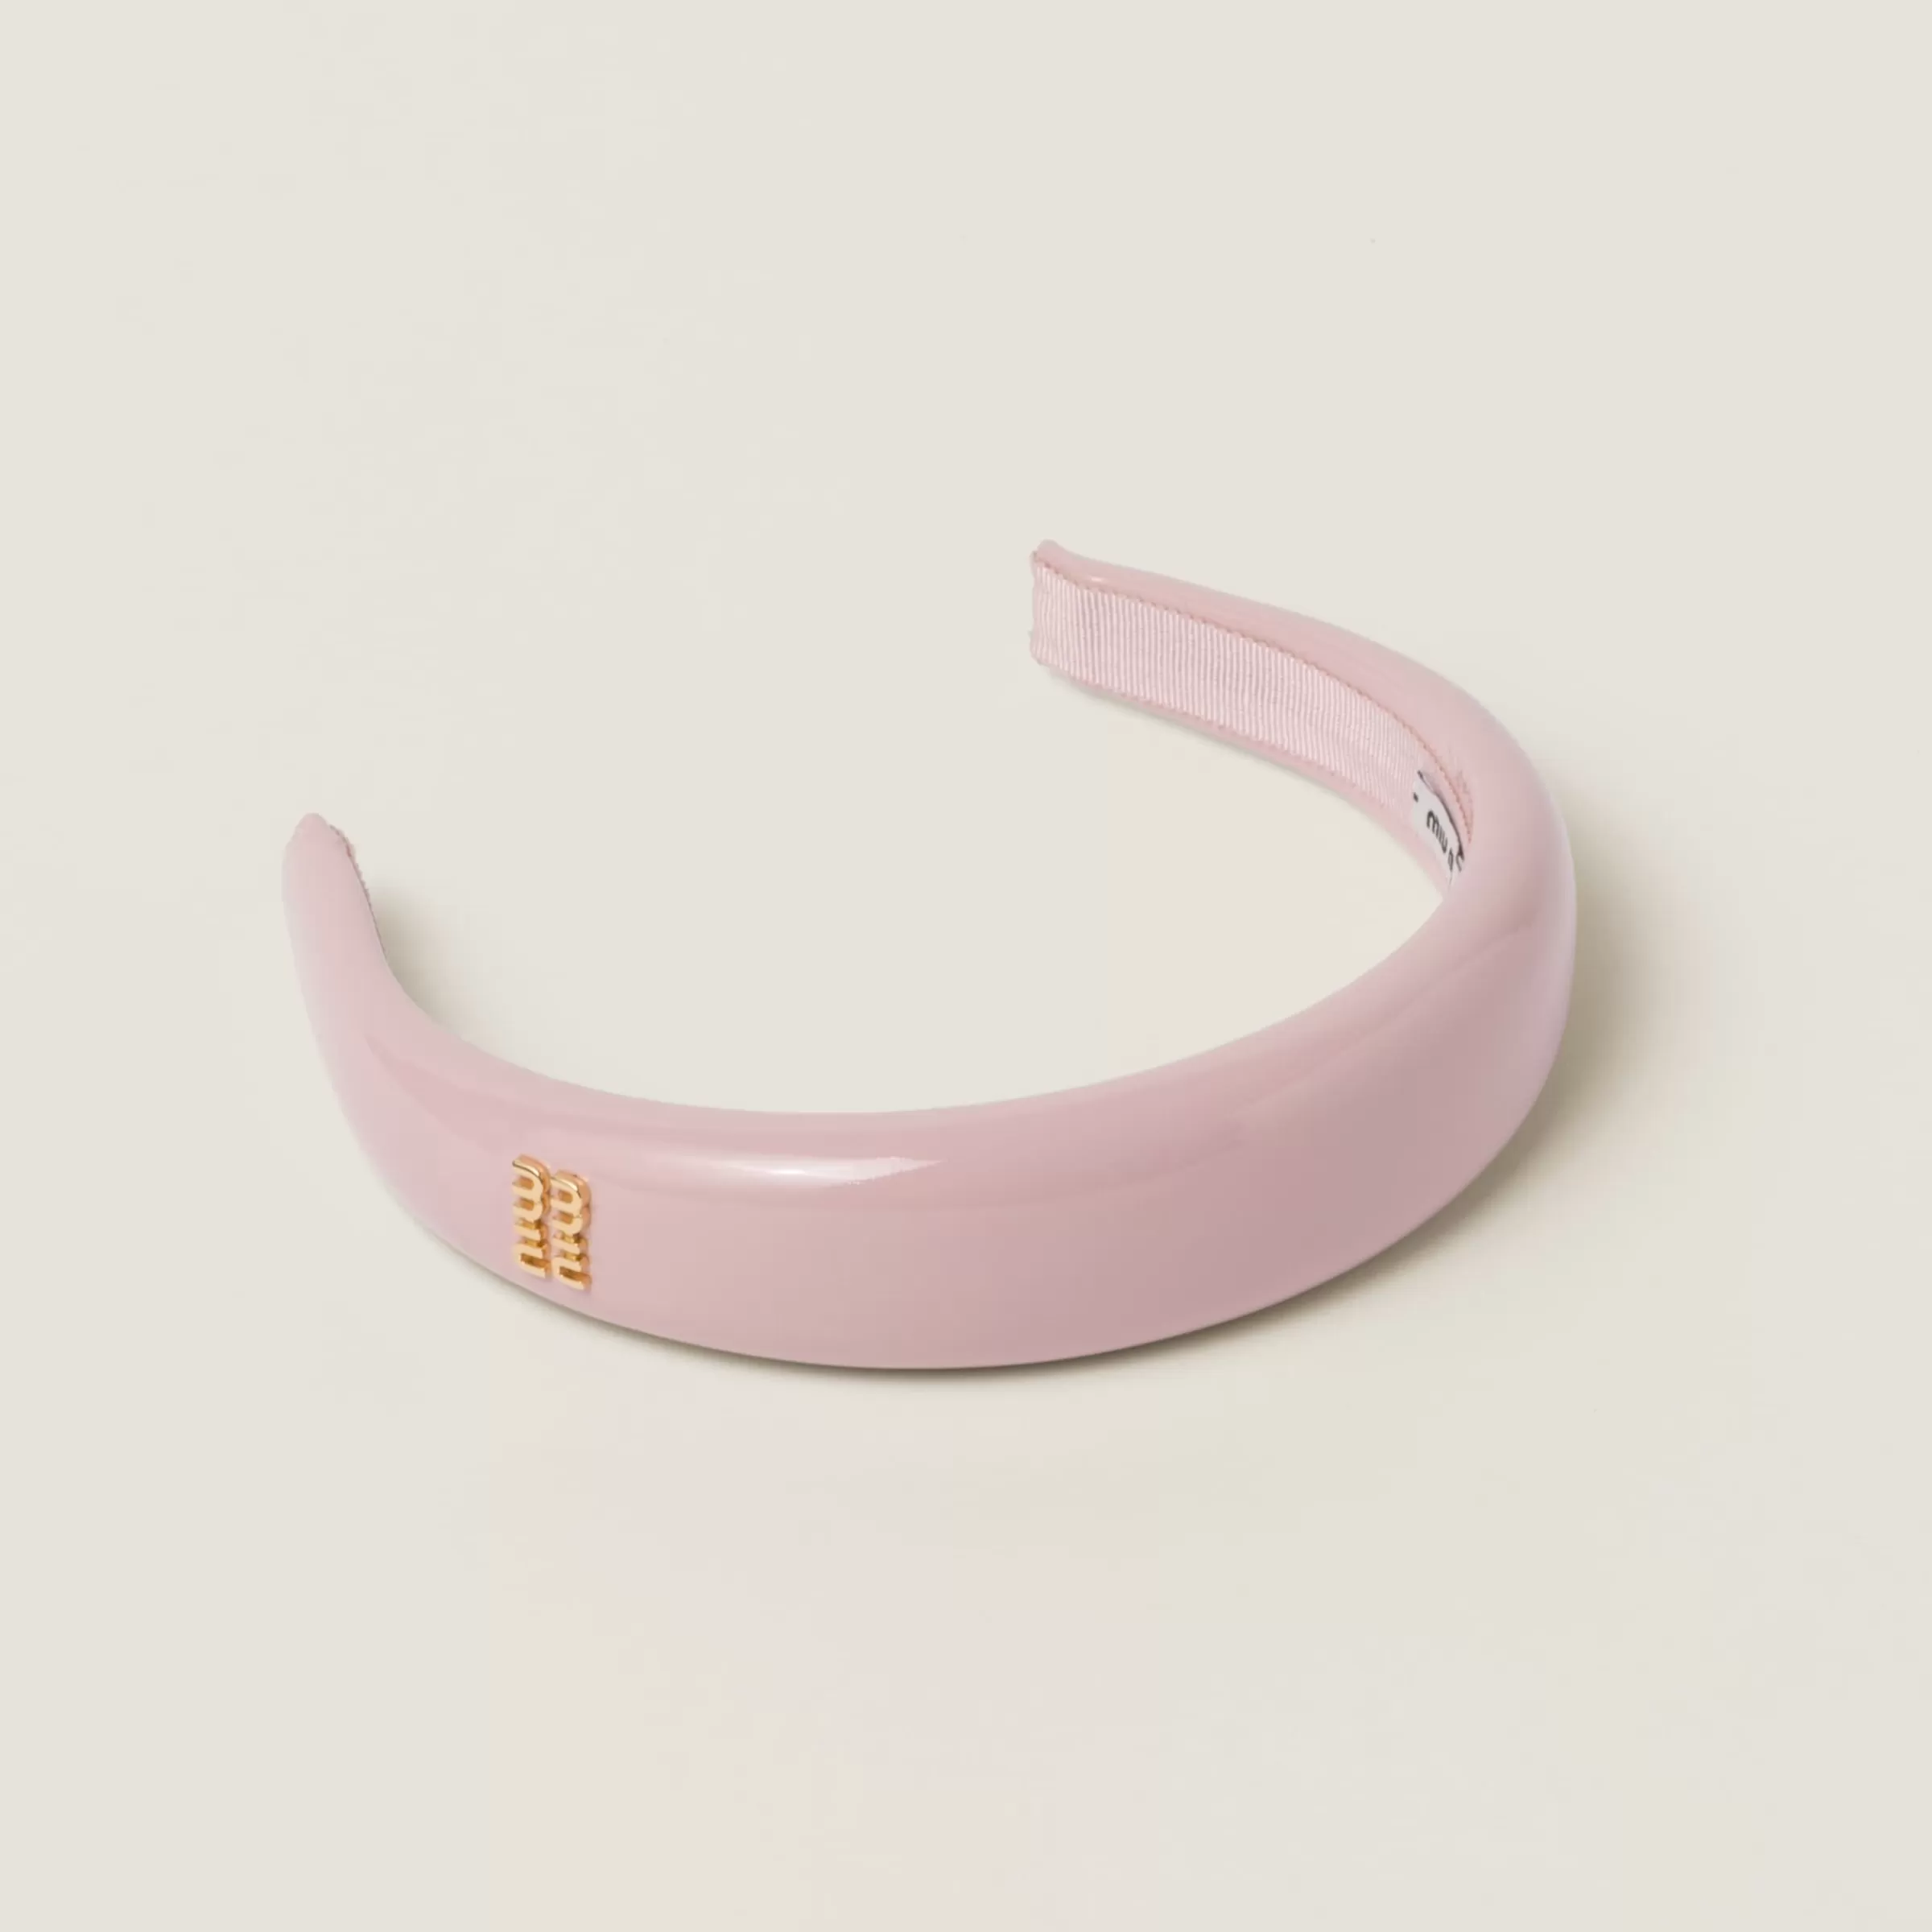 Miu Miu Patent Leather Headband |